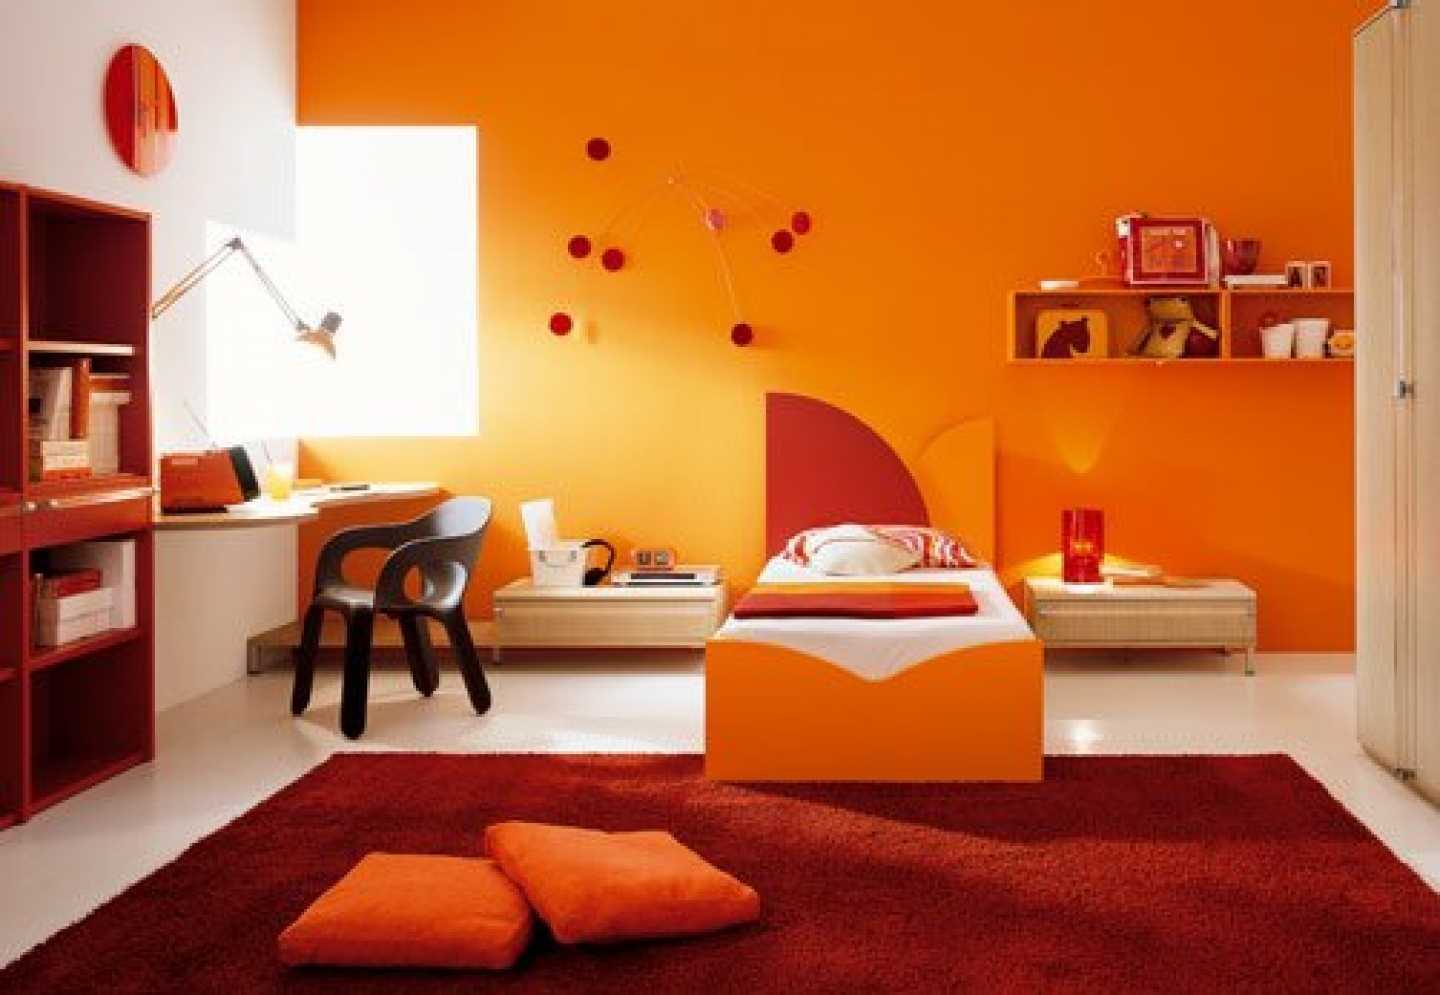 Оранжевый цвет: значение, применение, сочетание